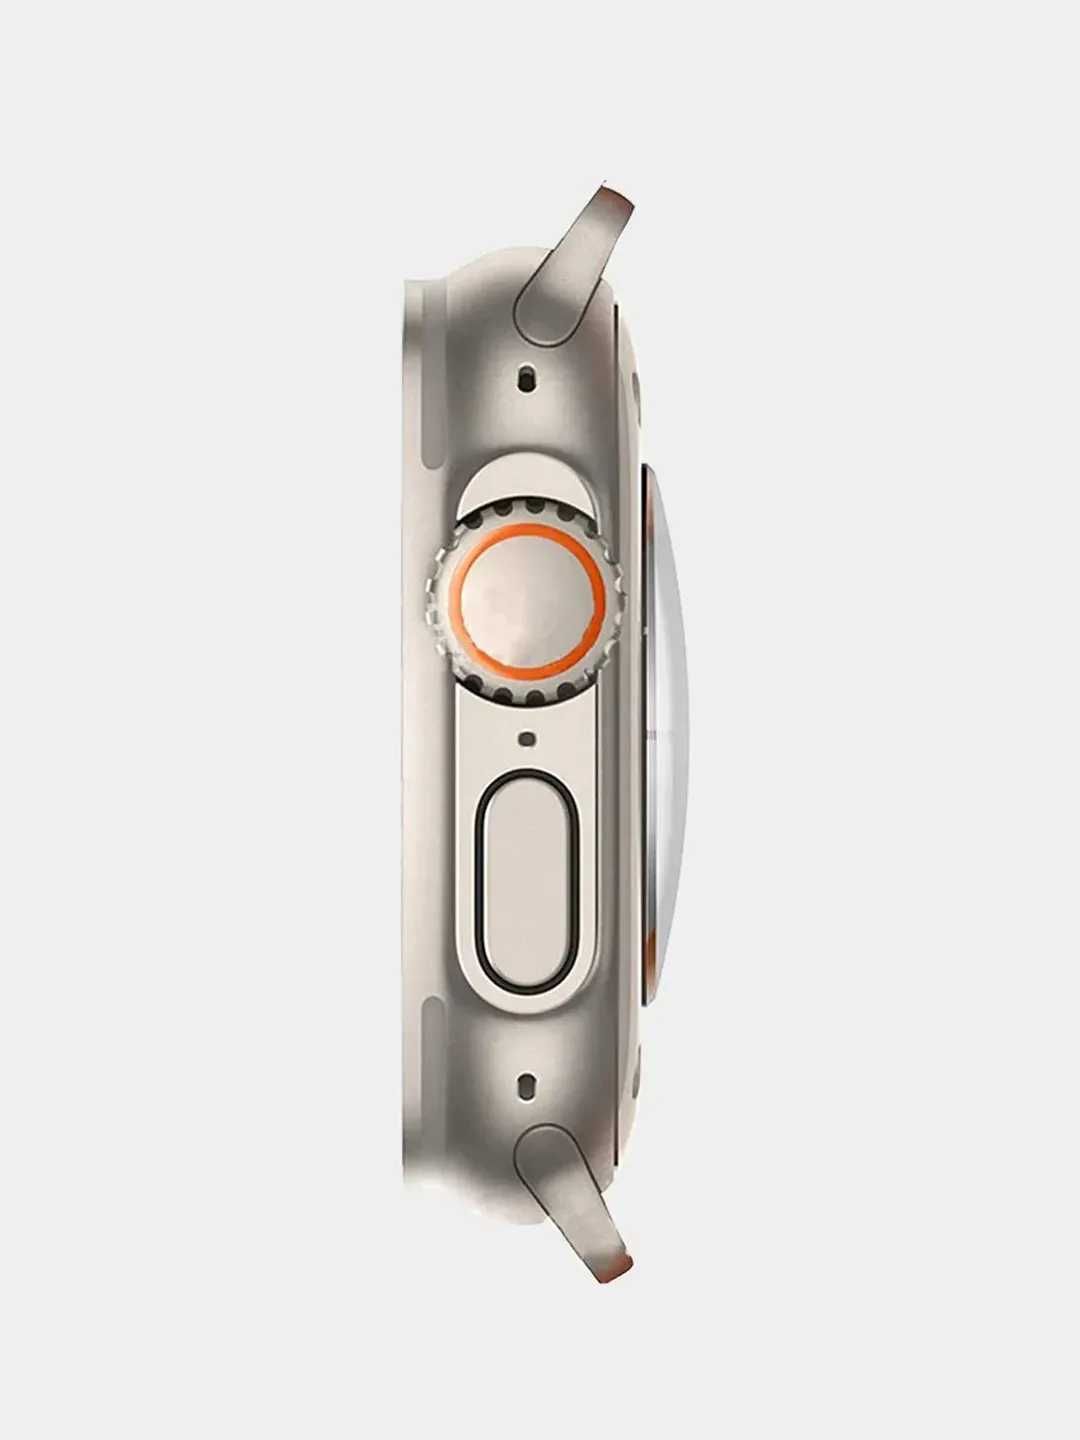 Smart Watch 8 T800 Ultra Смарт-часы